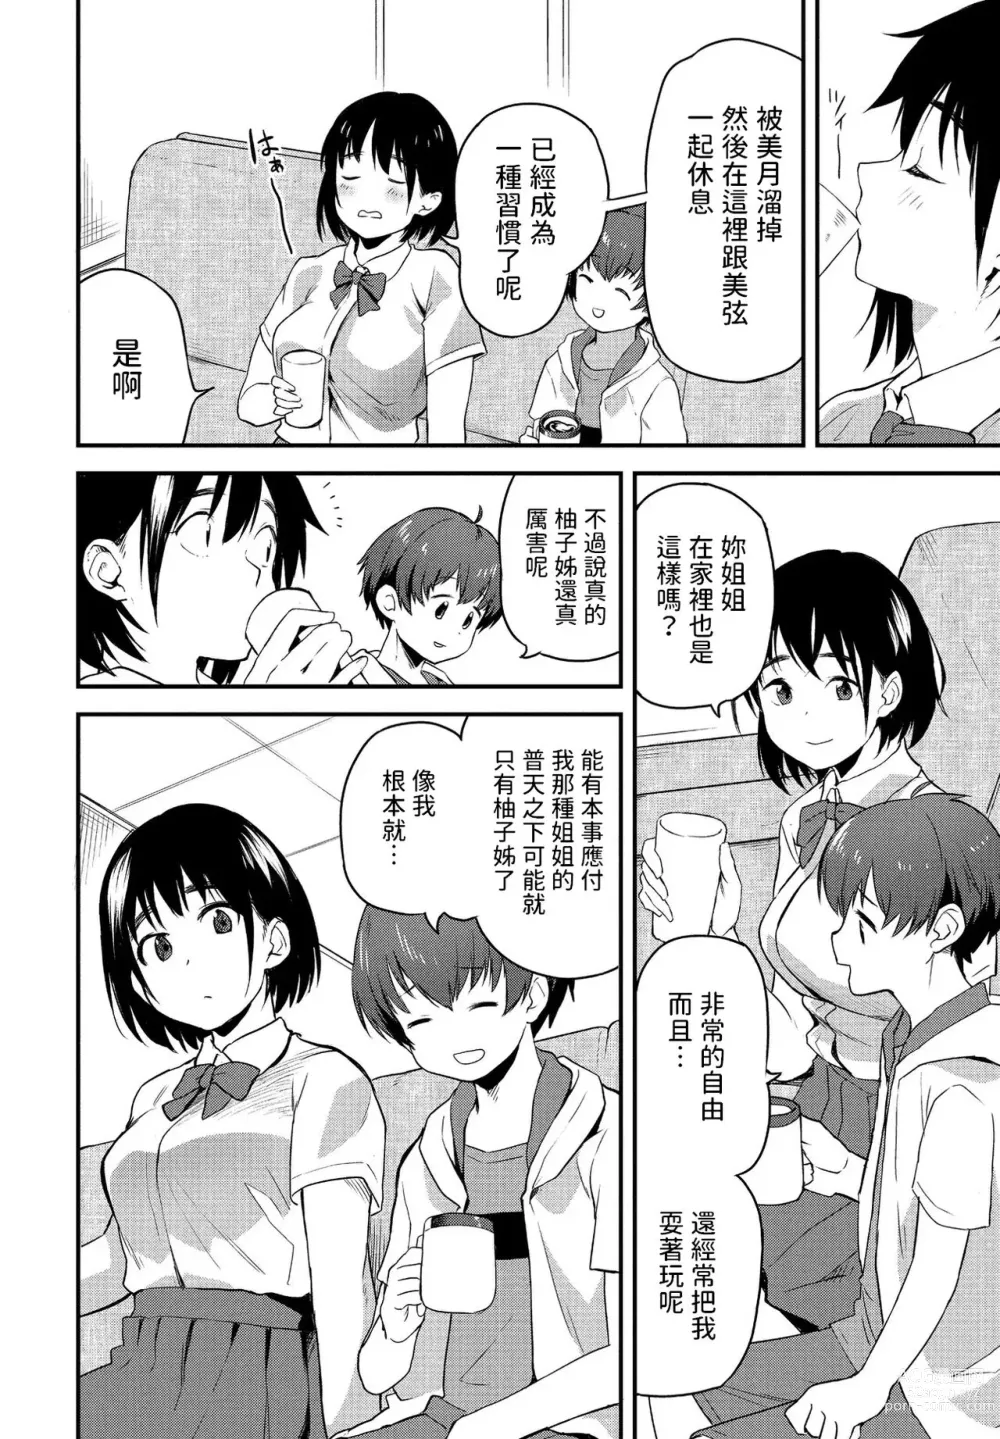 Page 4 of manga Massugu na Kimi ga Suki